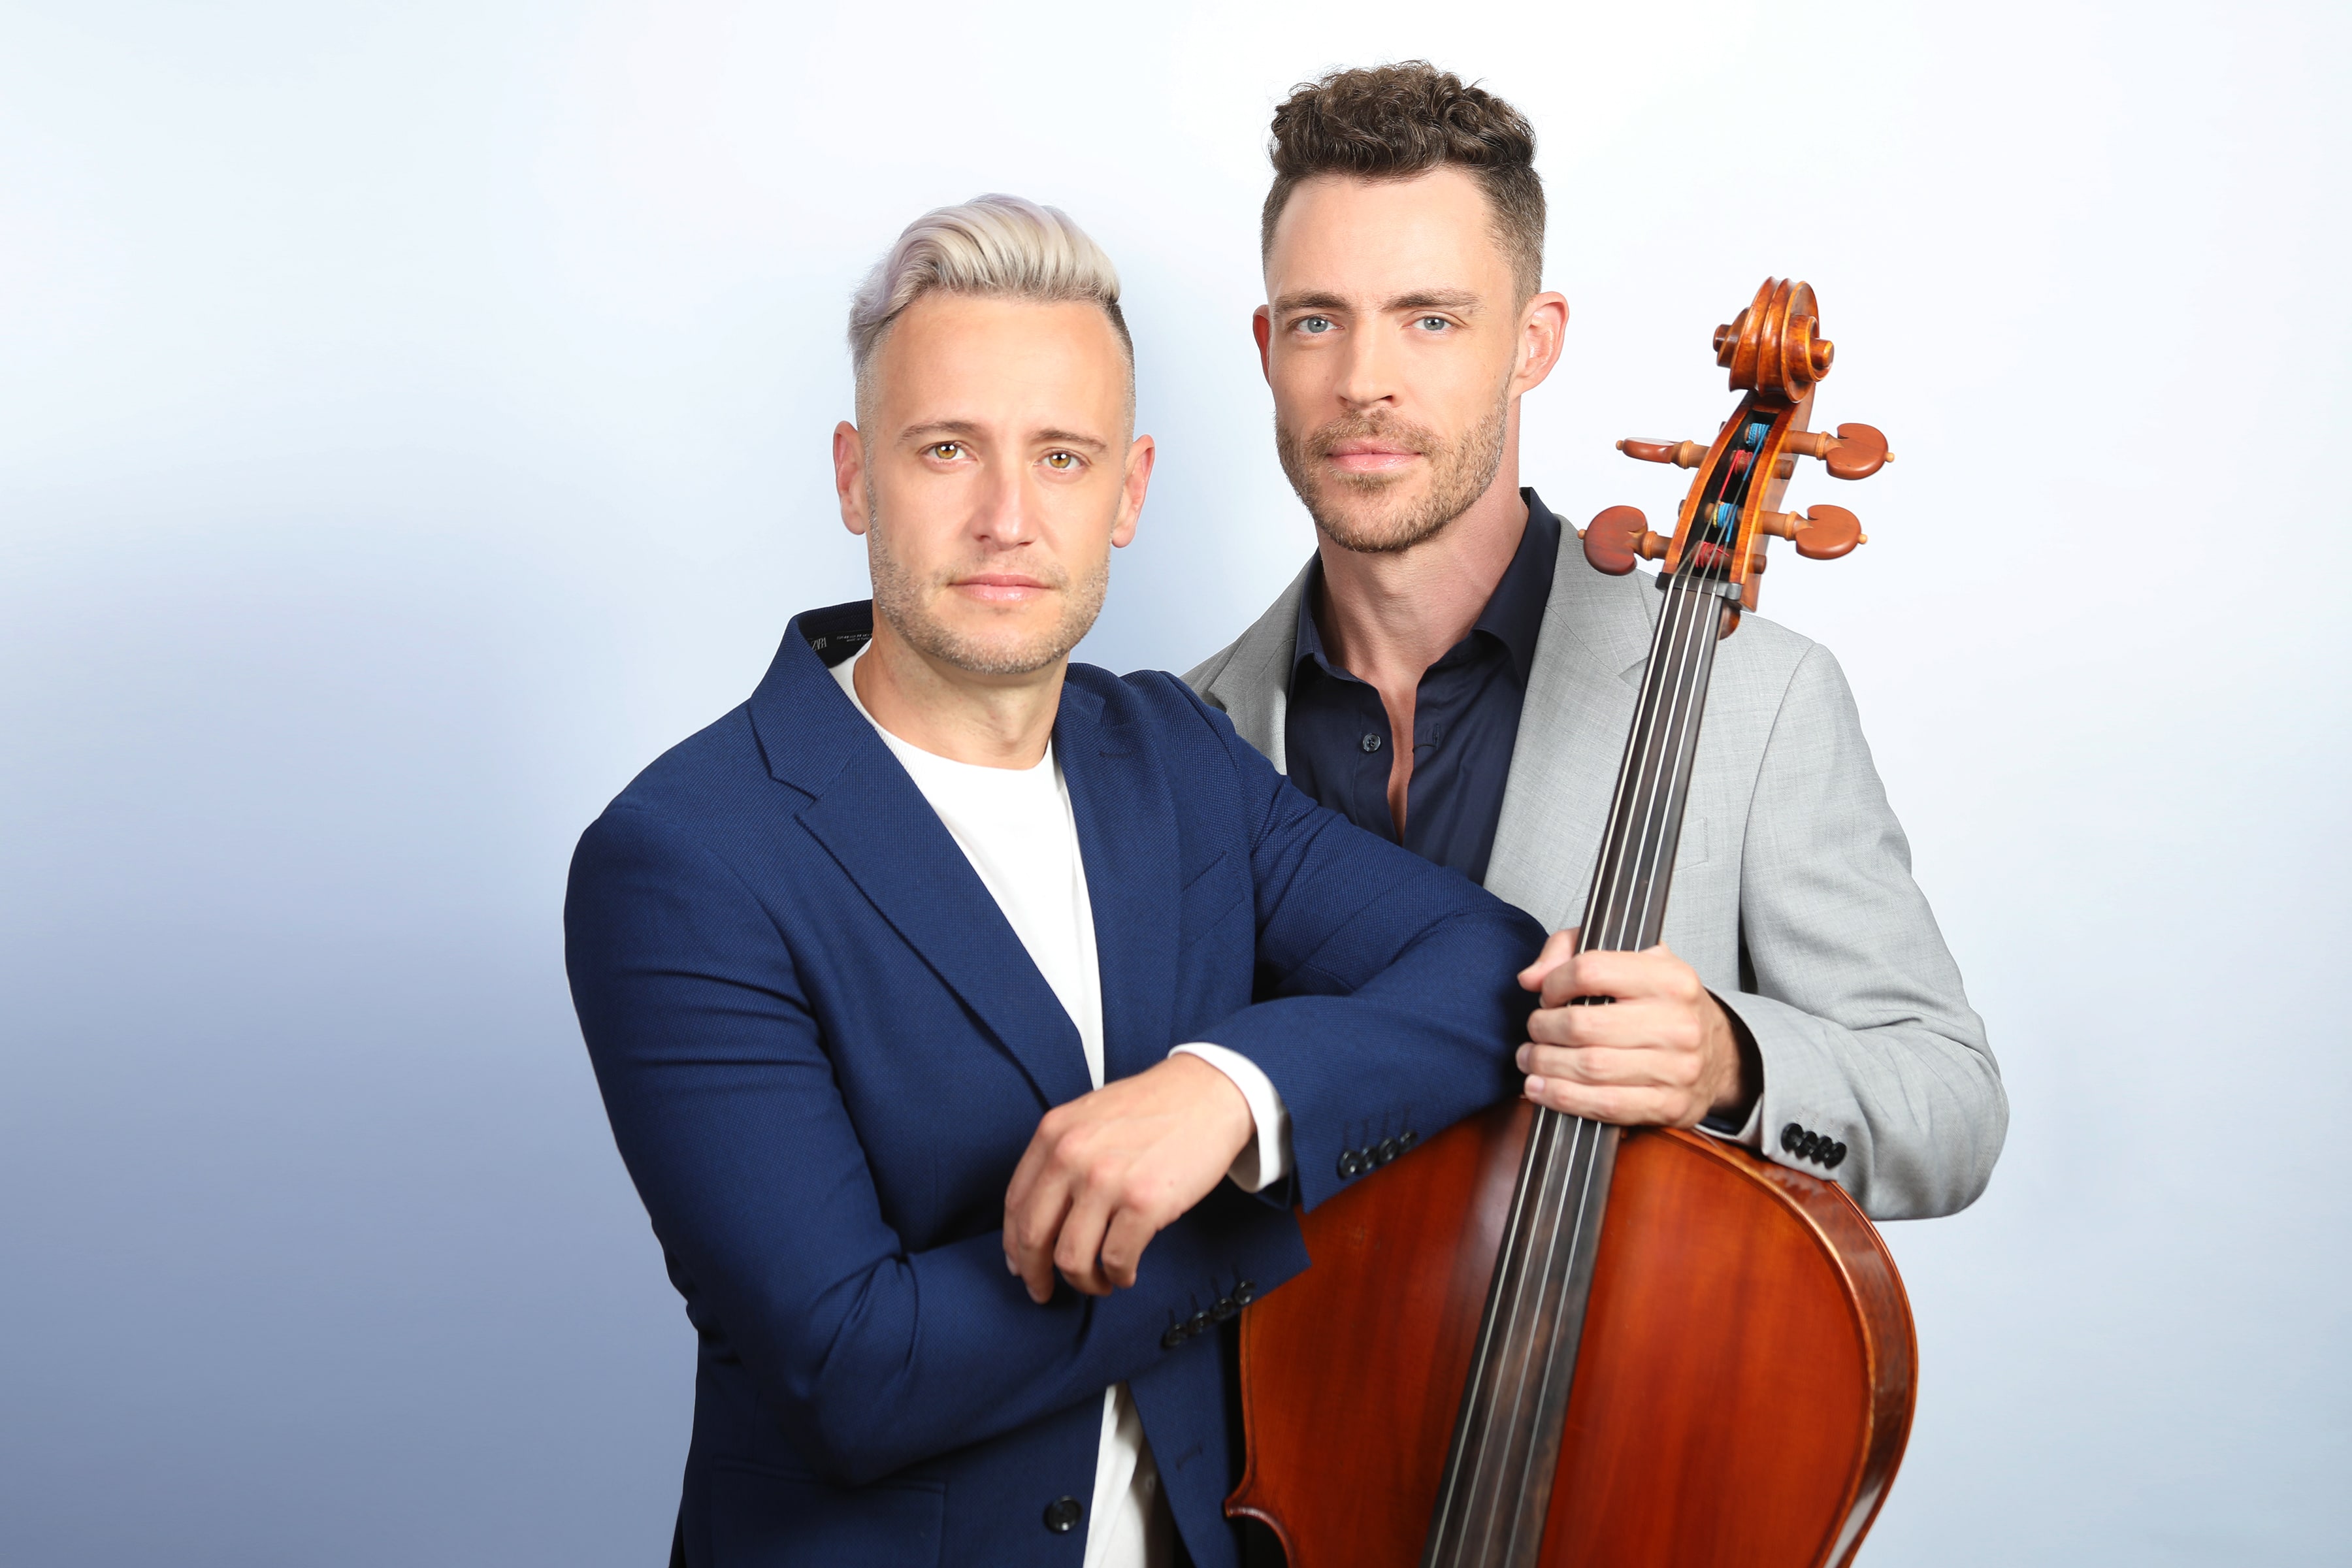 Branden & James with cello